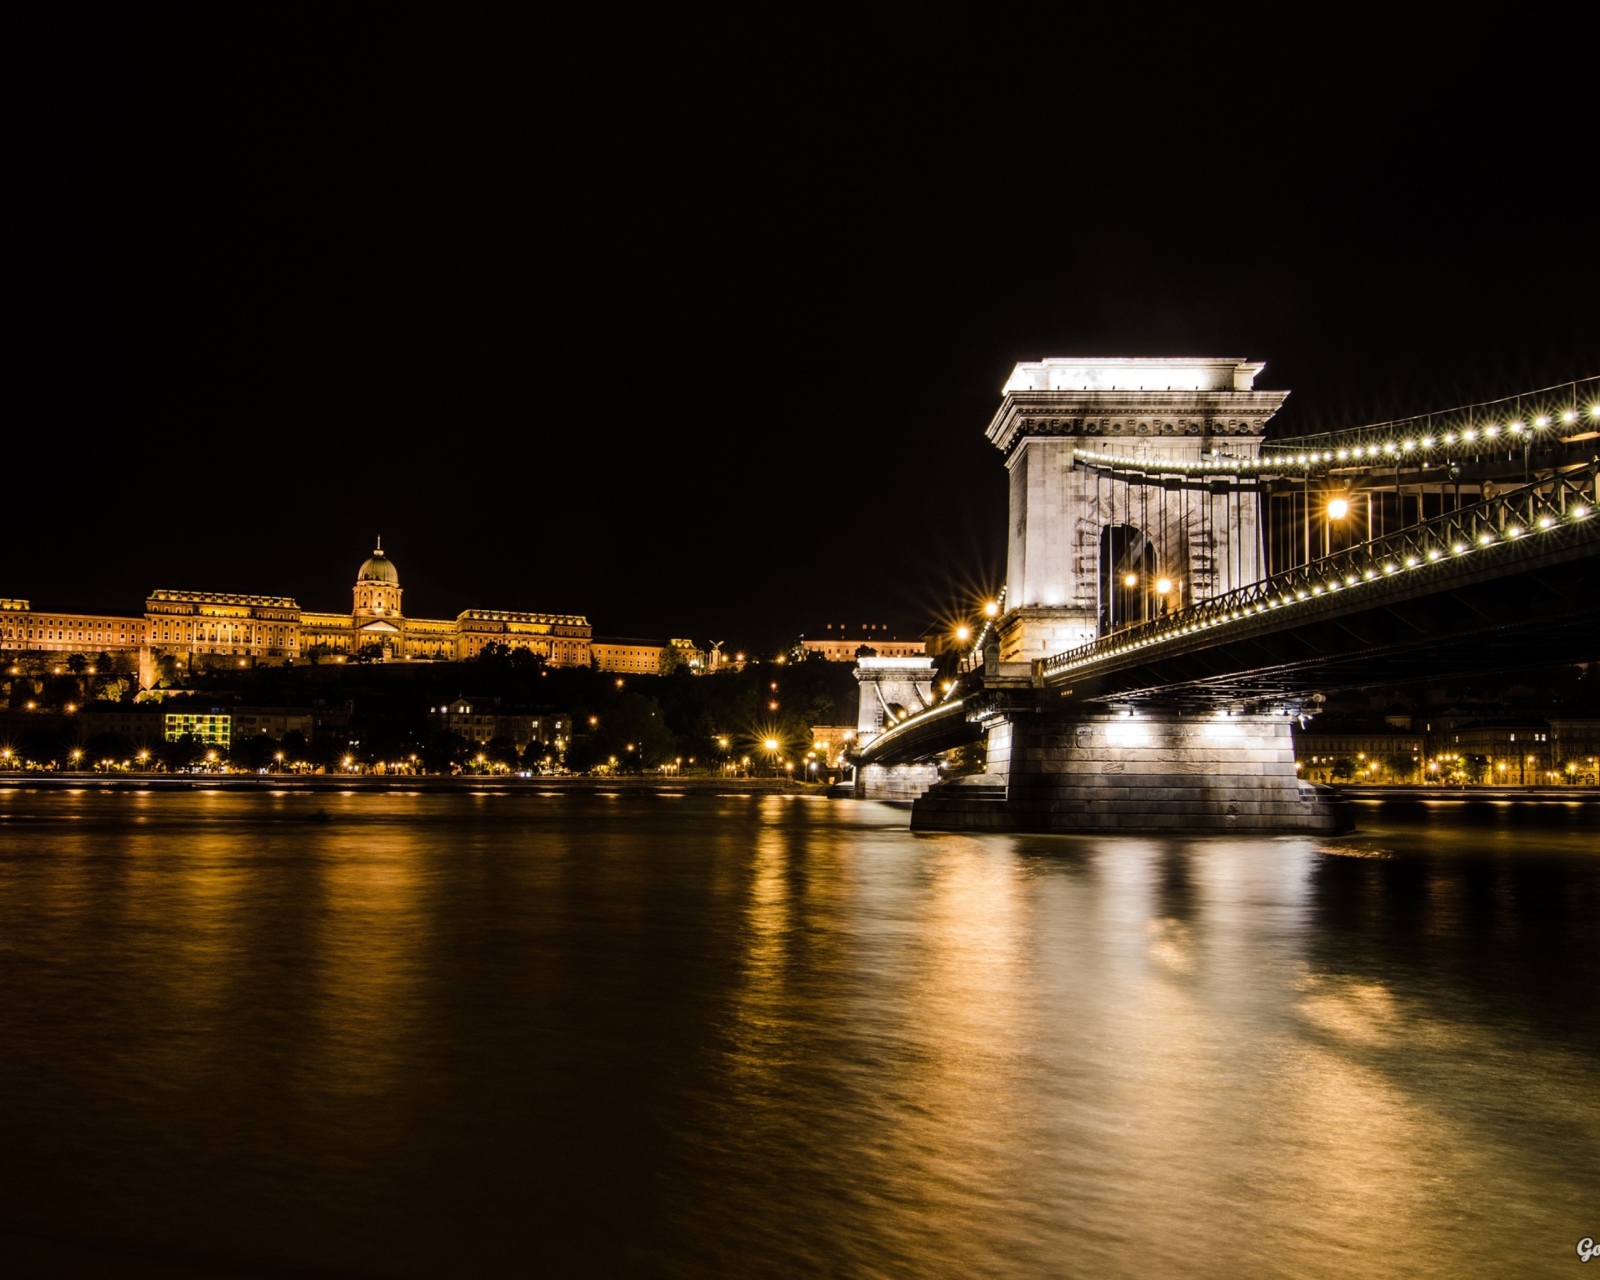 Das Chain Bridge at Night in Budapest Hungary Wallpaper 1600x1280